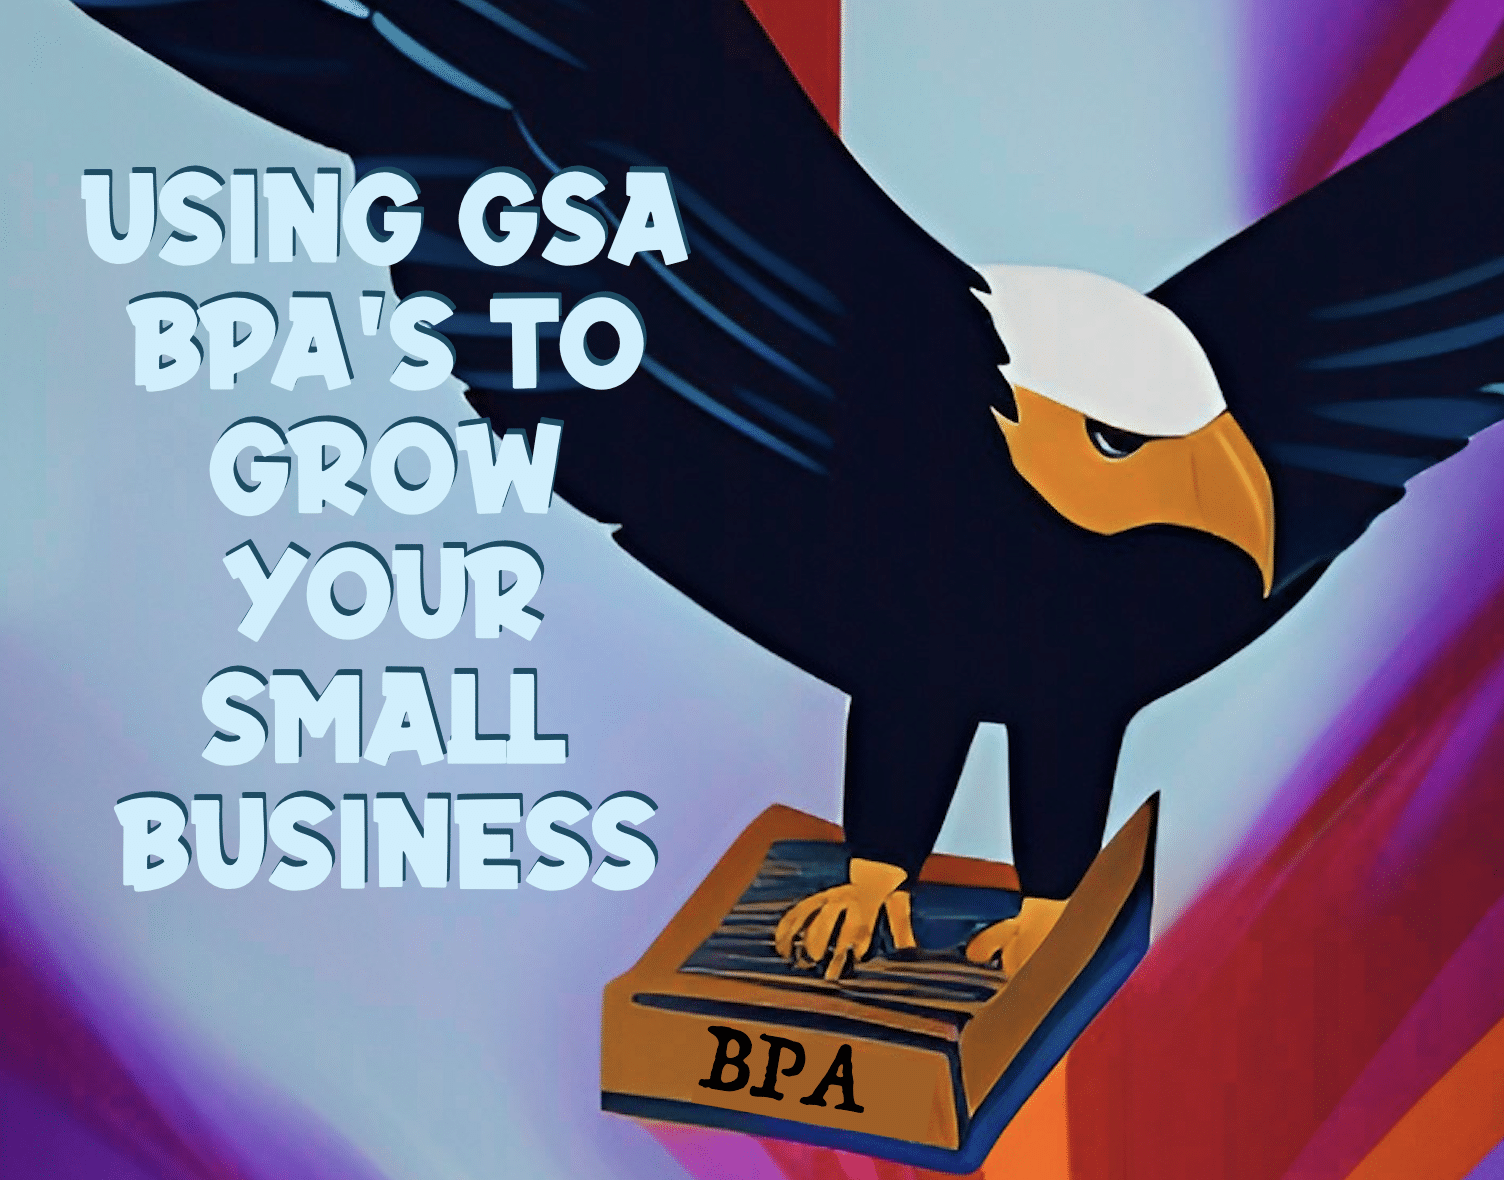 GSA BPA